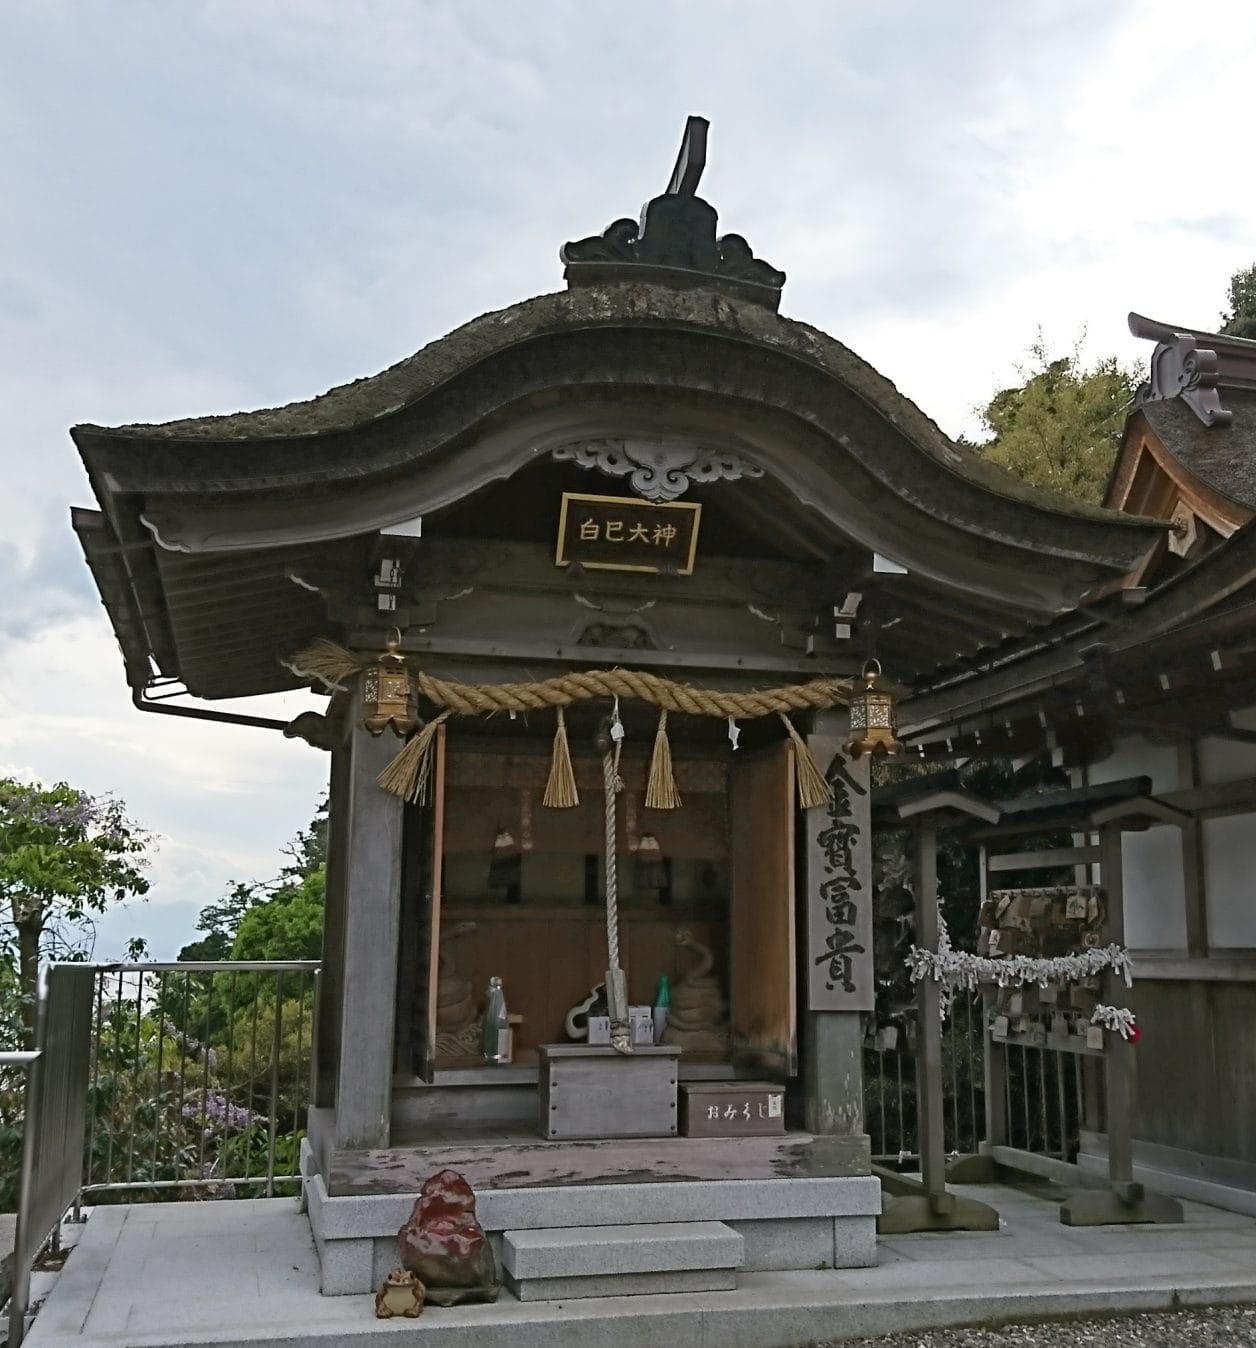 竹生島の都久夫須麻神社にある白巳大神